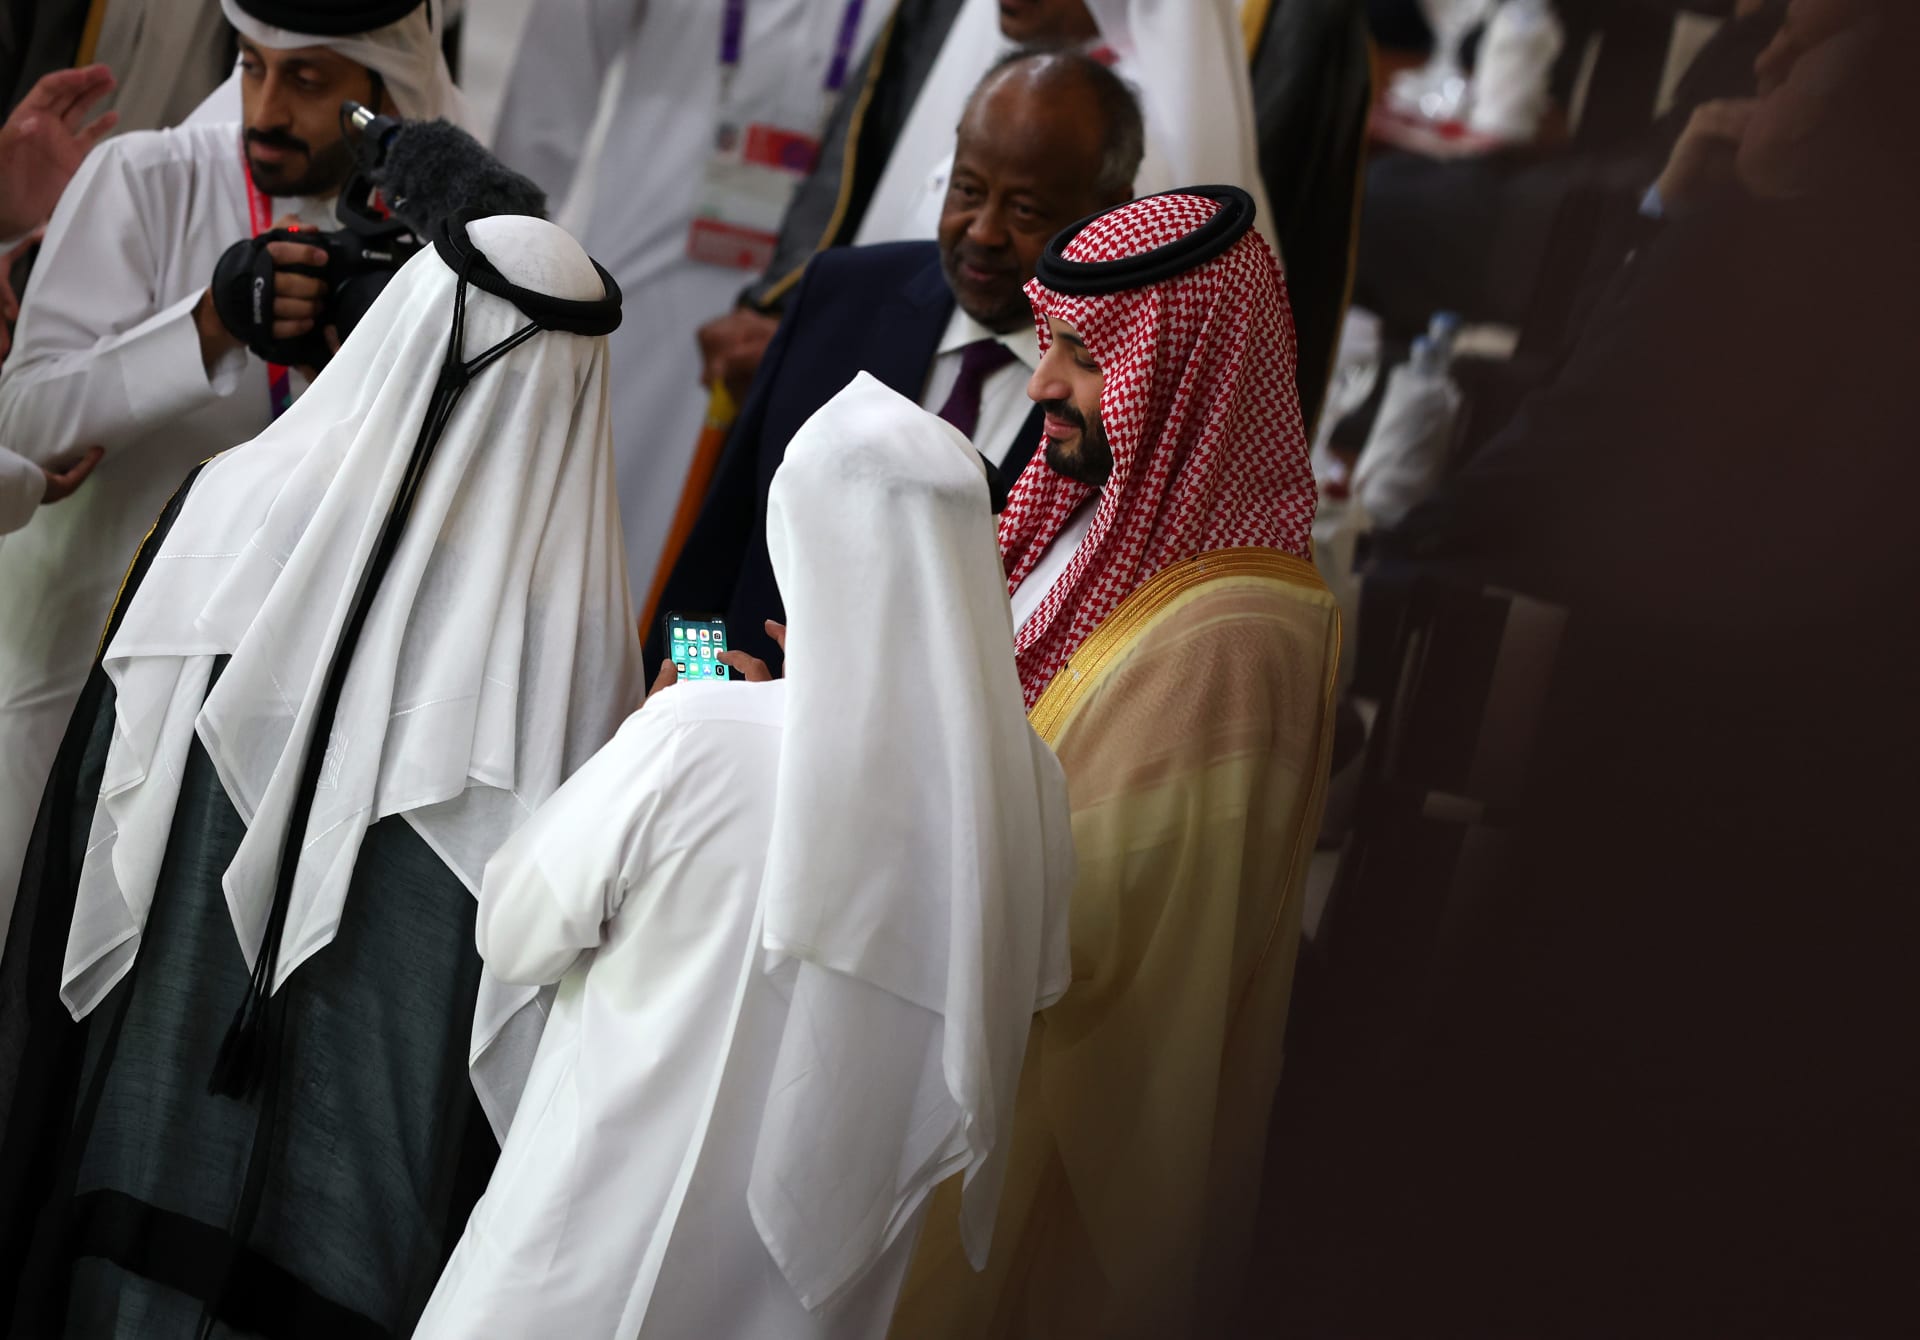 محمد بن سلمان يهنئ رئيس وزراء العراق بعد البطولة الناجحة.. هل استخدم مسمى "كأس الخليج العربي"؟